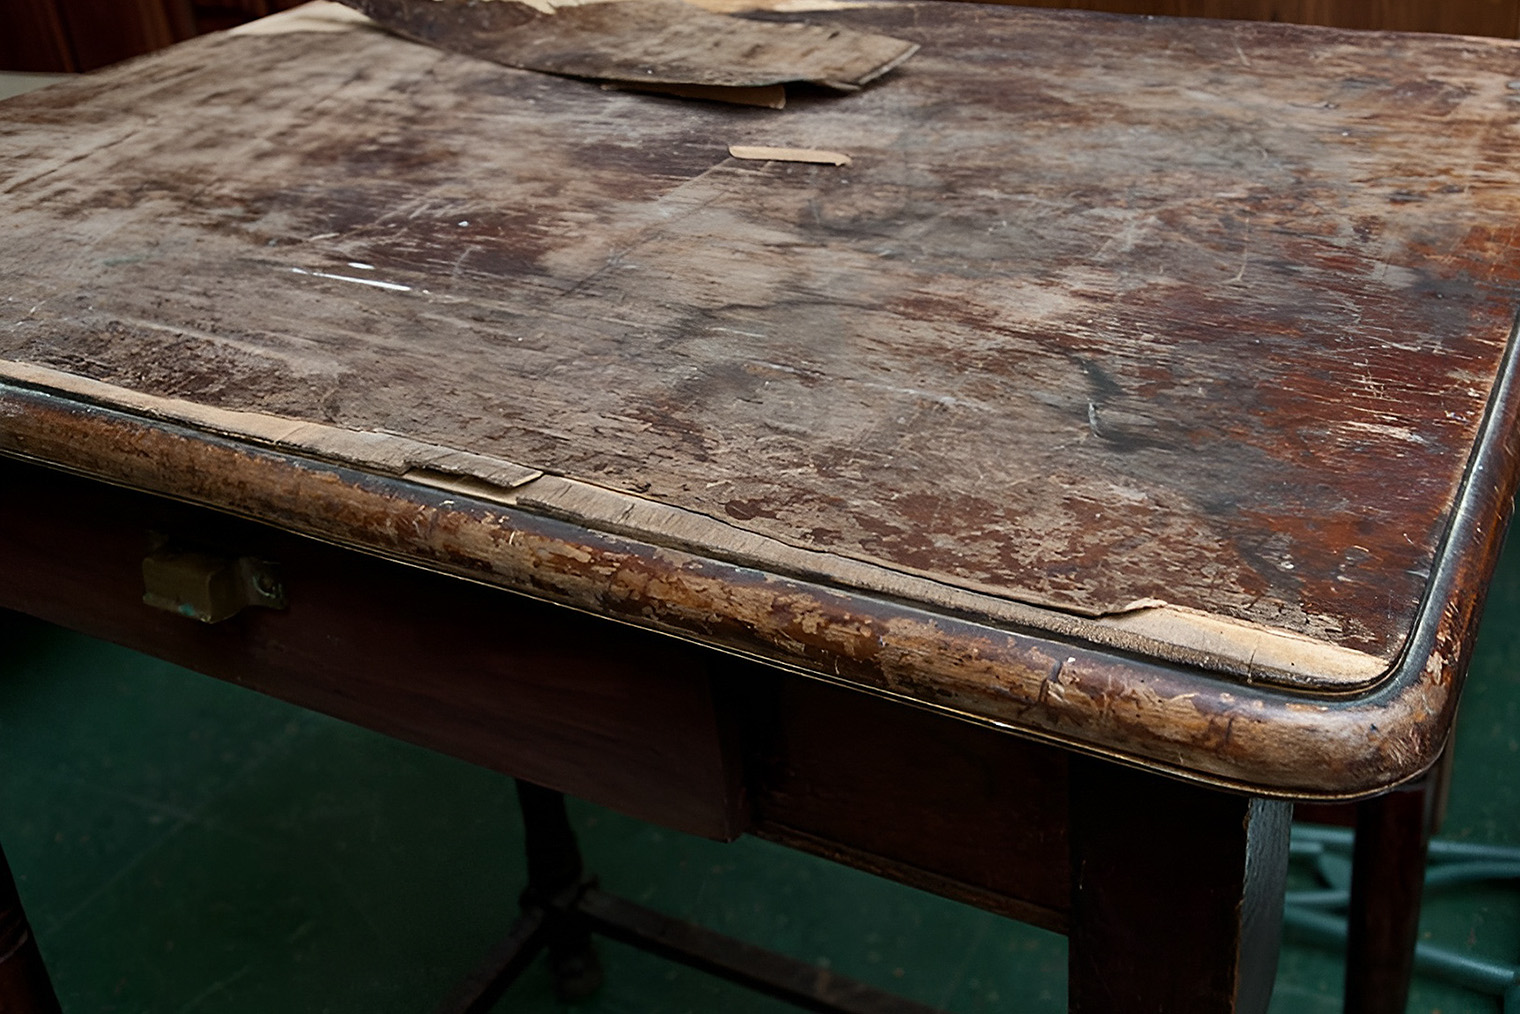 Со временем шпон на мебели может сколоться или отойти, тогда потребуется реставрация. Источник: salvagedinspirations.com